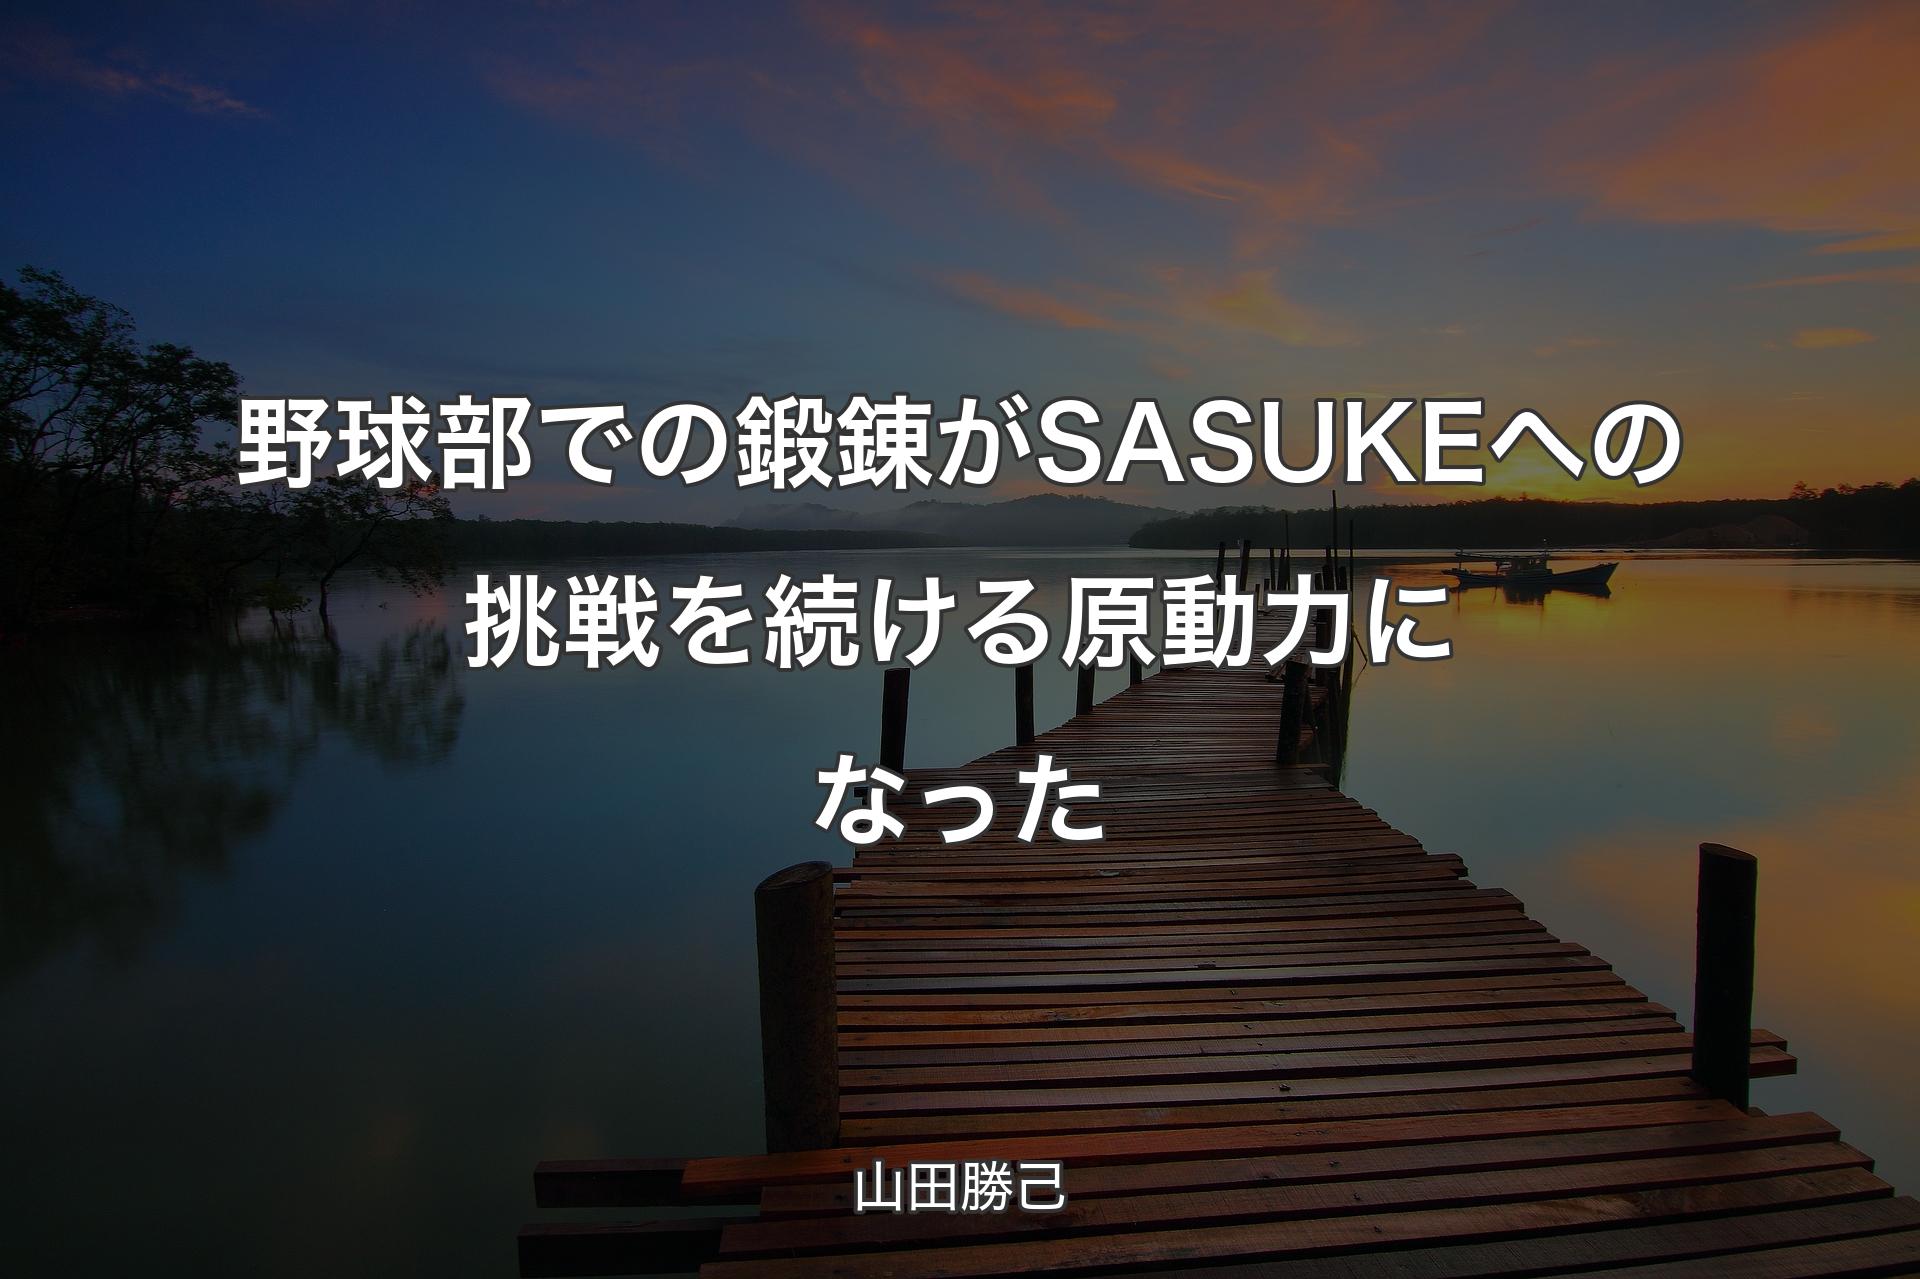 【背景3】野球部での鍛錬がSASUKEへの挑戦を続ける原動力になった - 山田勝己